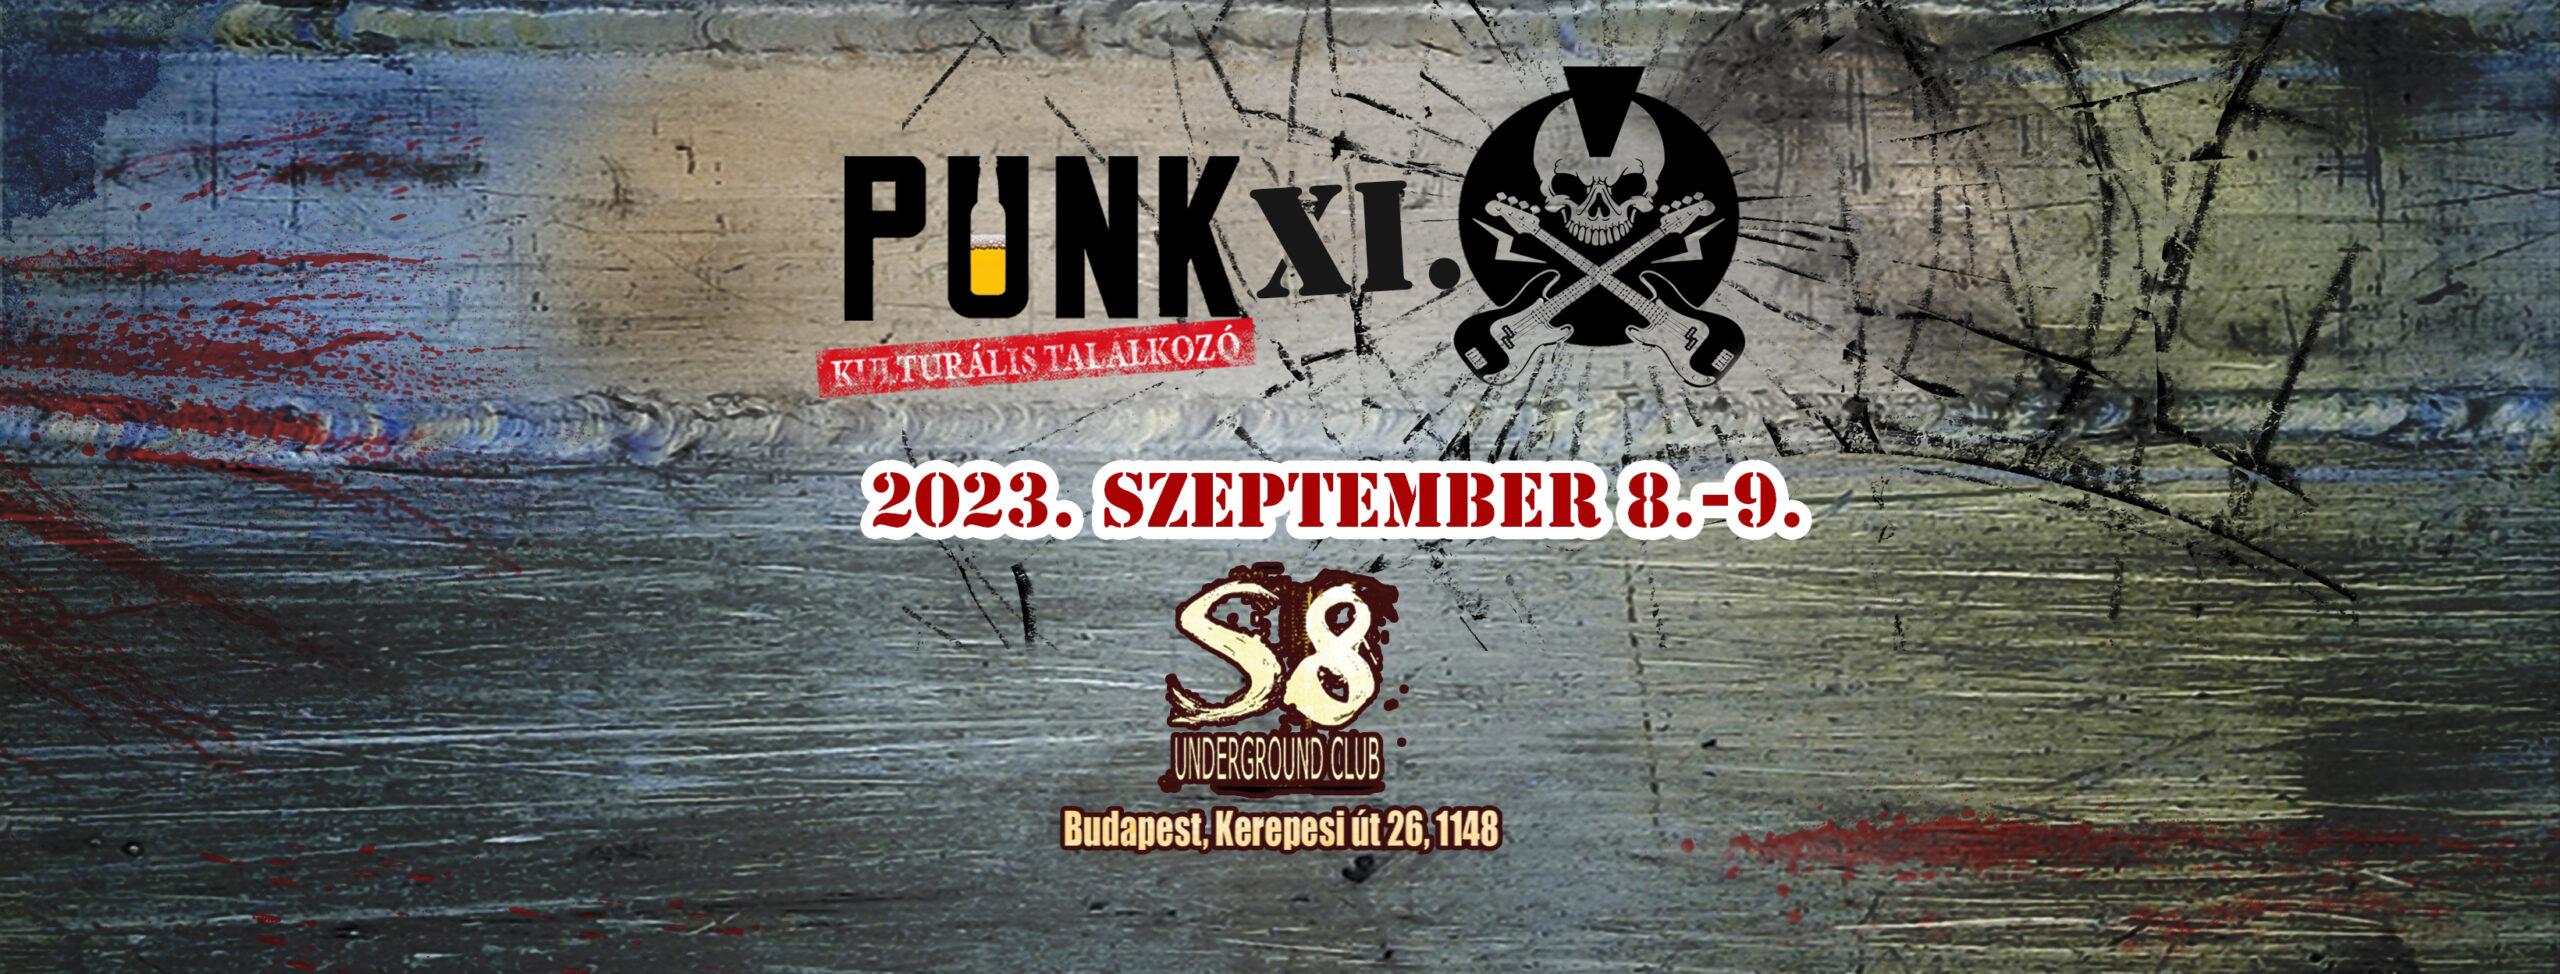 Punk Kulturális Találkozó - soralatet.com